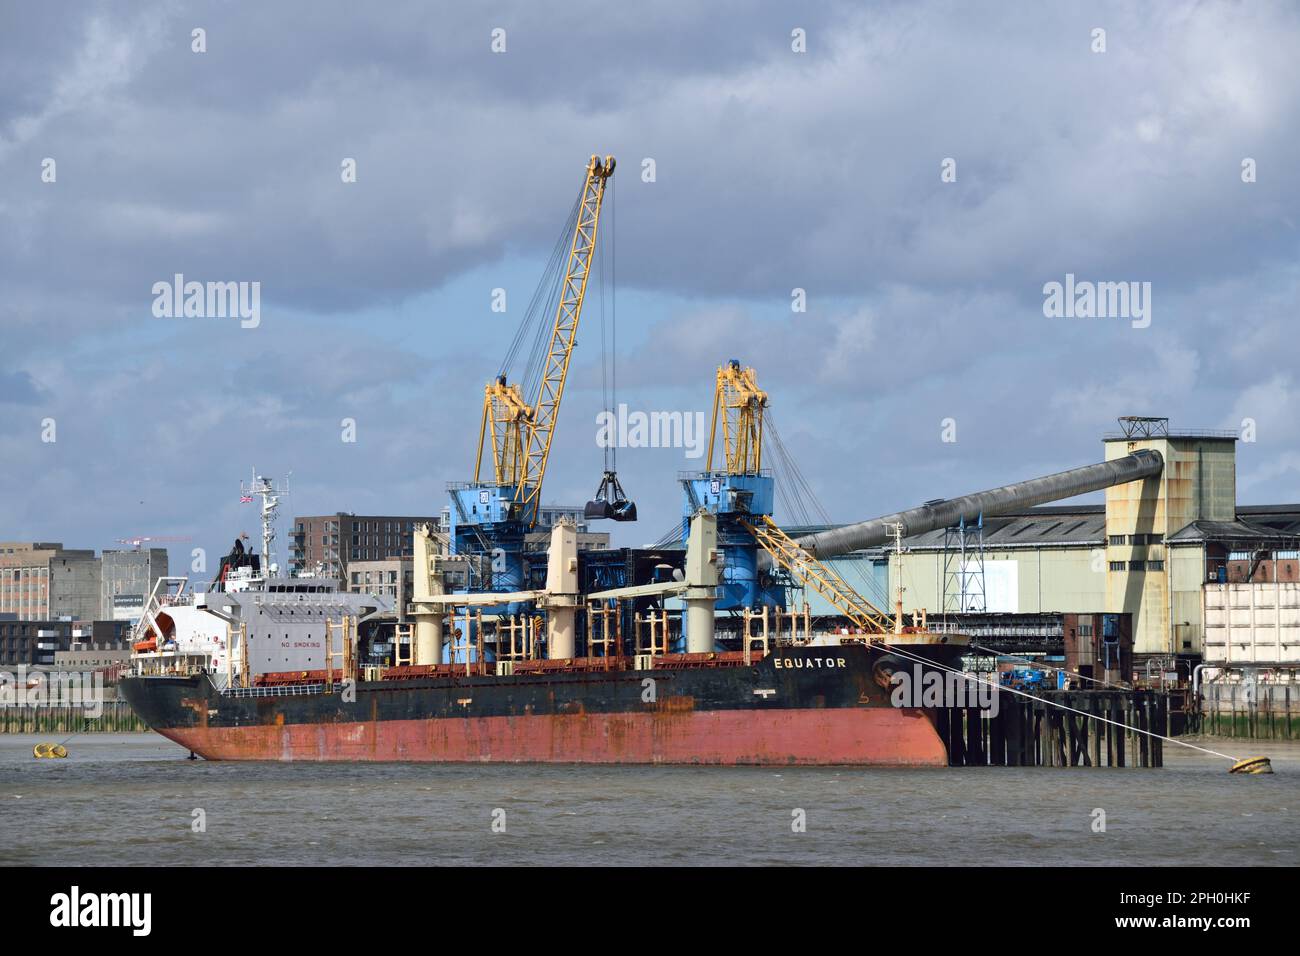 EQUATORE di navi da carico presso la raffineria Tate & Lyle Sugar's Thames di Silvertown, Londra, che scarica un carico di zucchero di canna Foto Stock